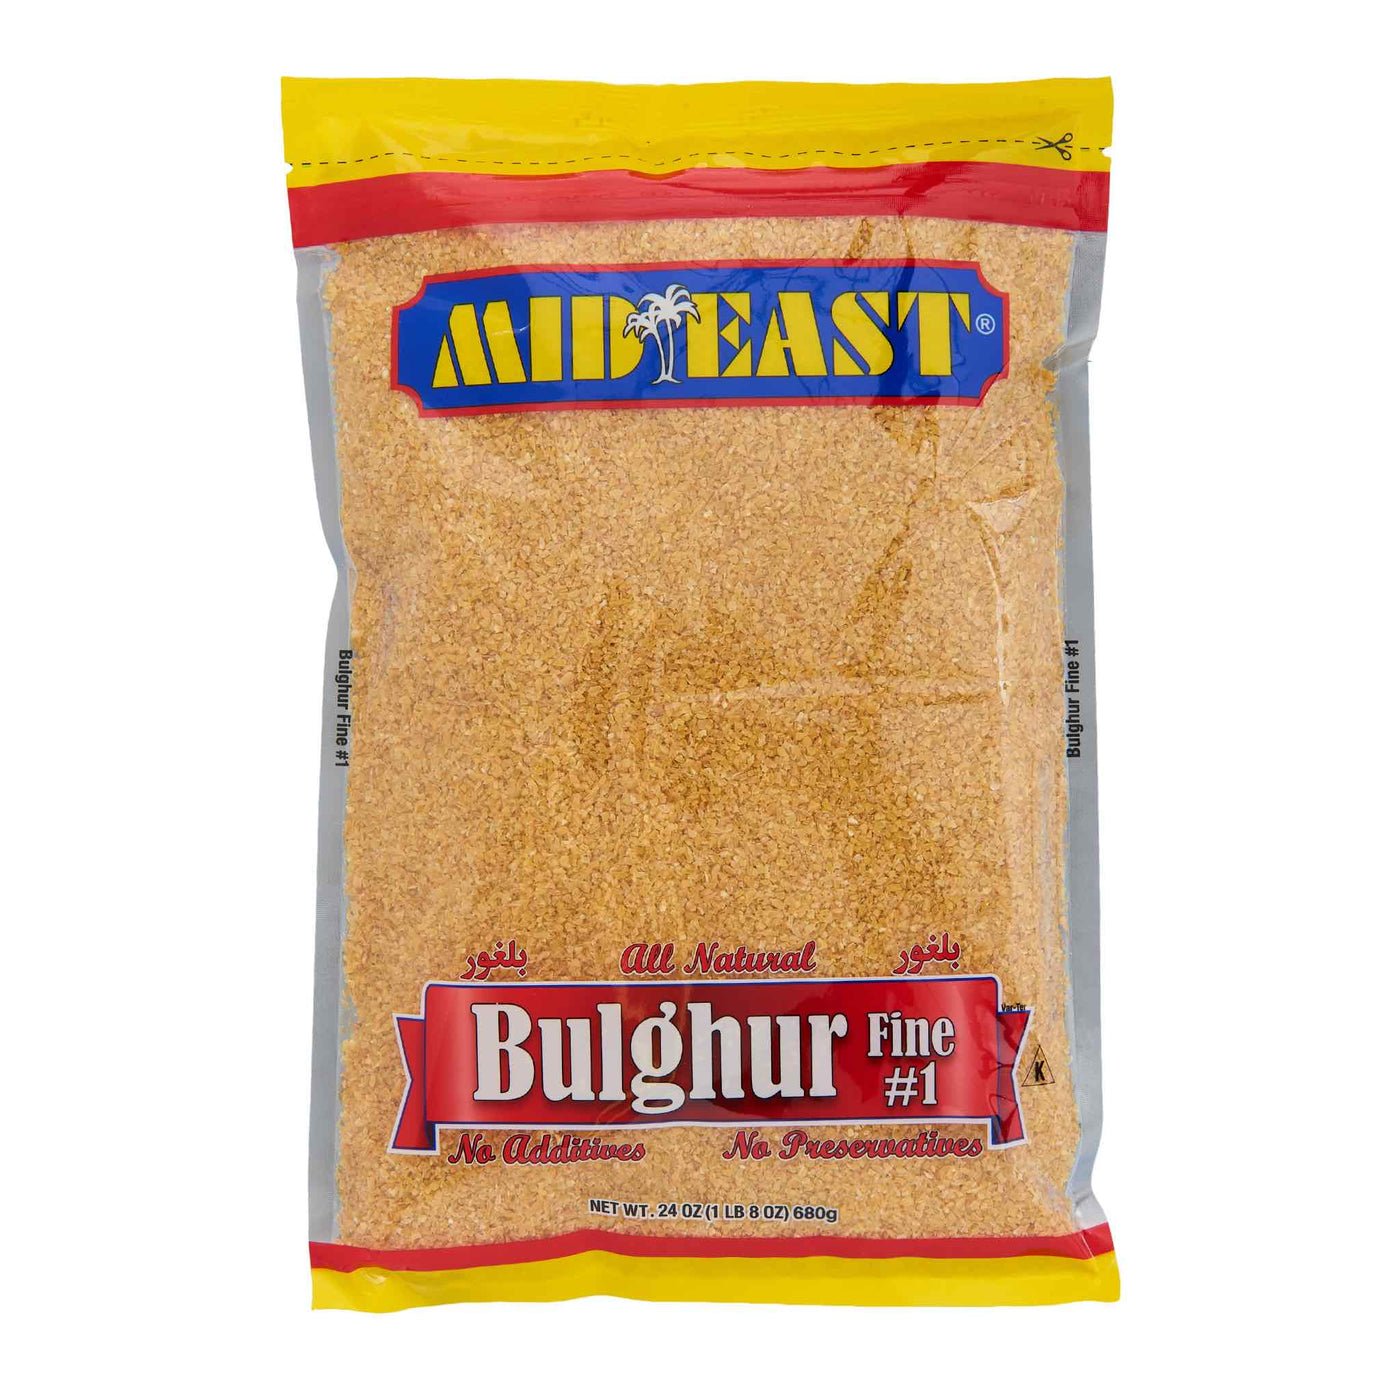 Mideast Bulgur #1 (Fine) 24 Oz - Mideast Grocers